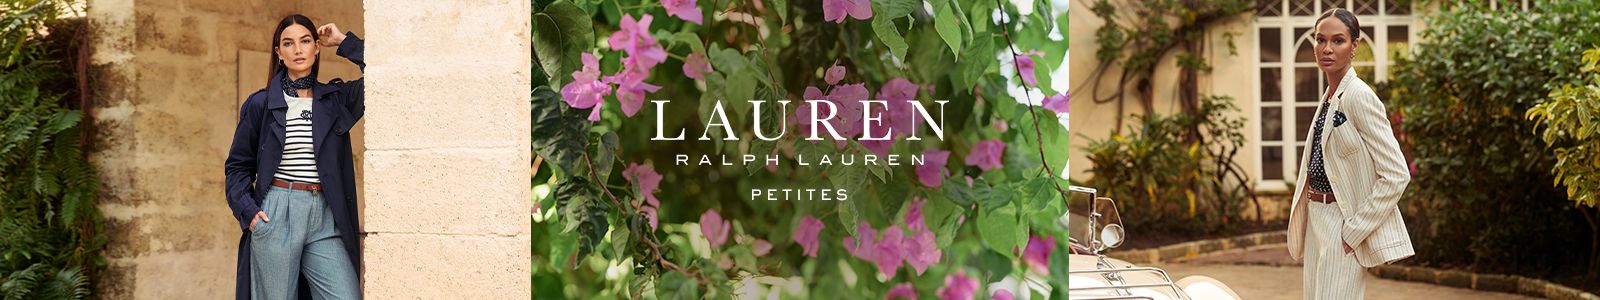 Lauren, Ralph Lauren, Petites